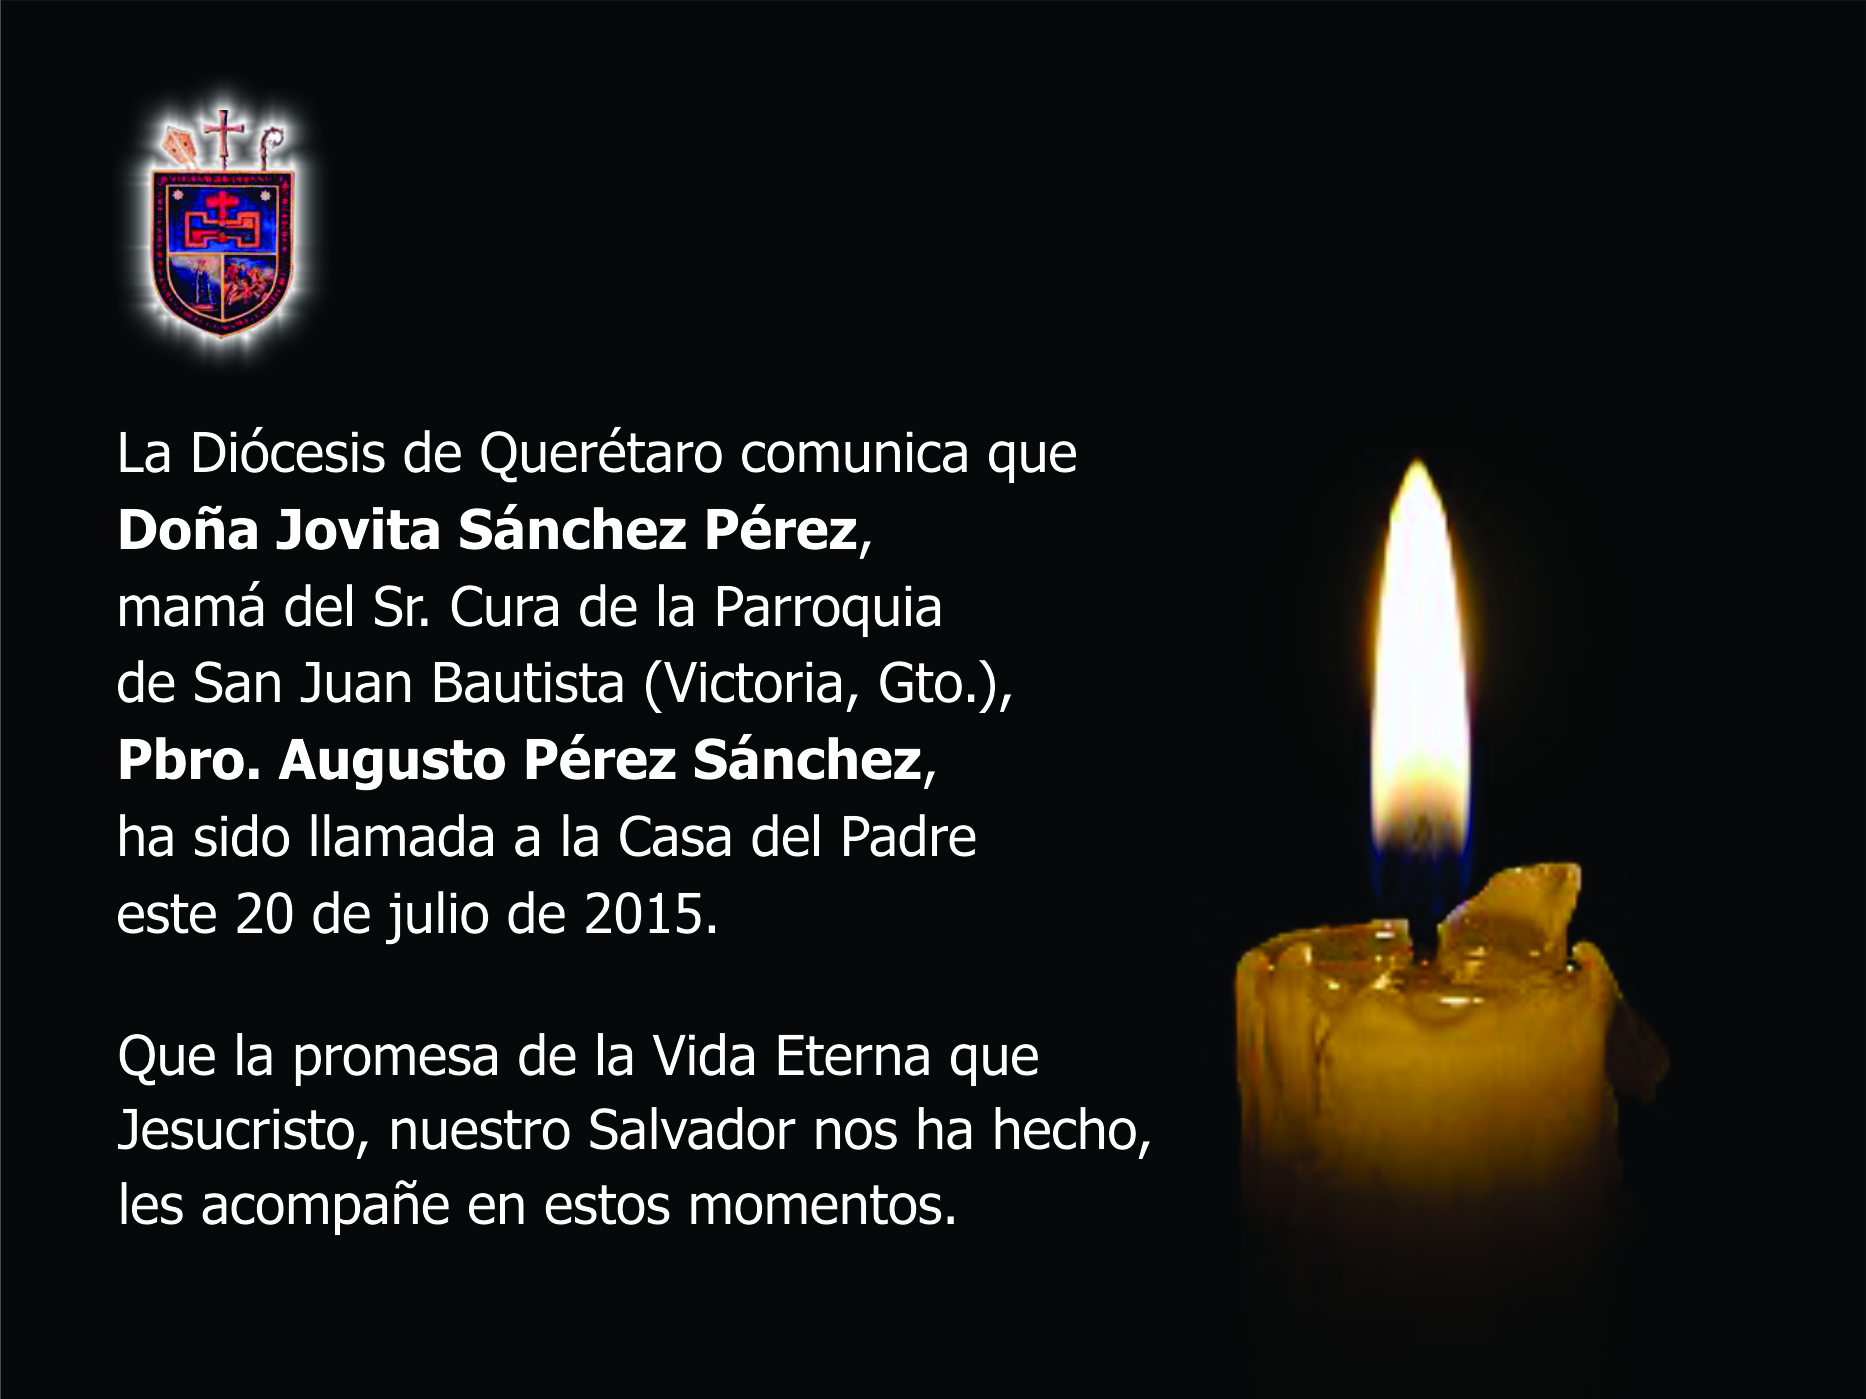 La mamá del P. Augusto Pérez Sánchez ha fallecido – Diócesis de Querétaro